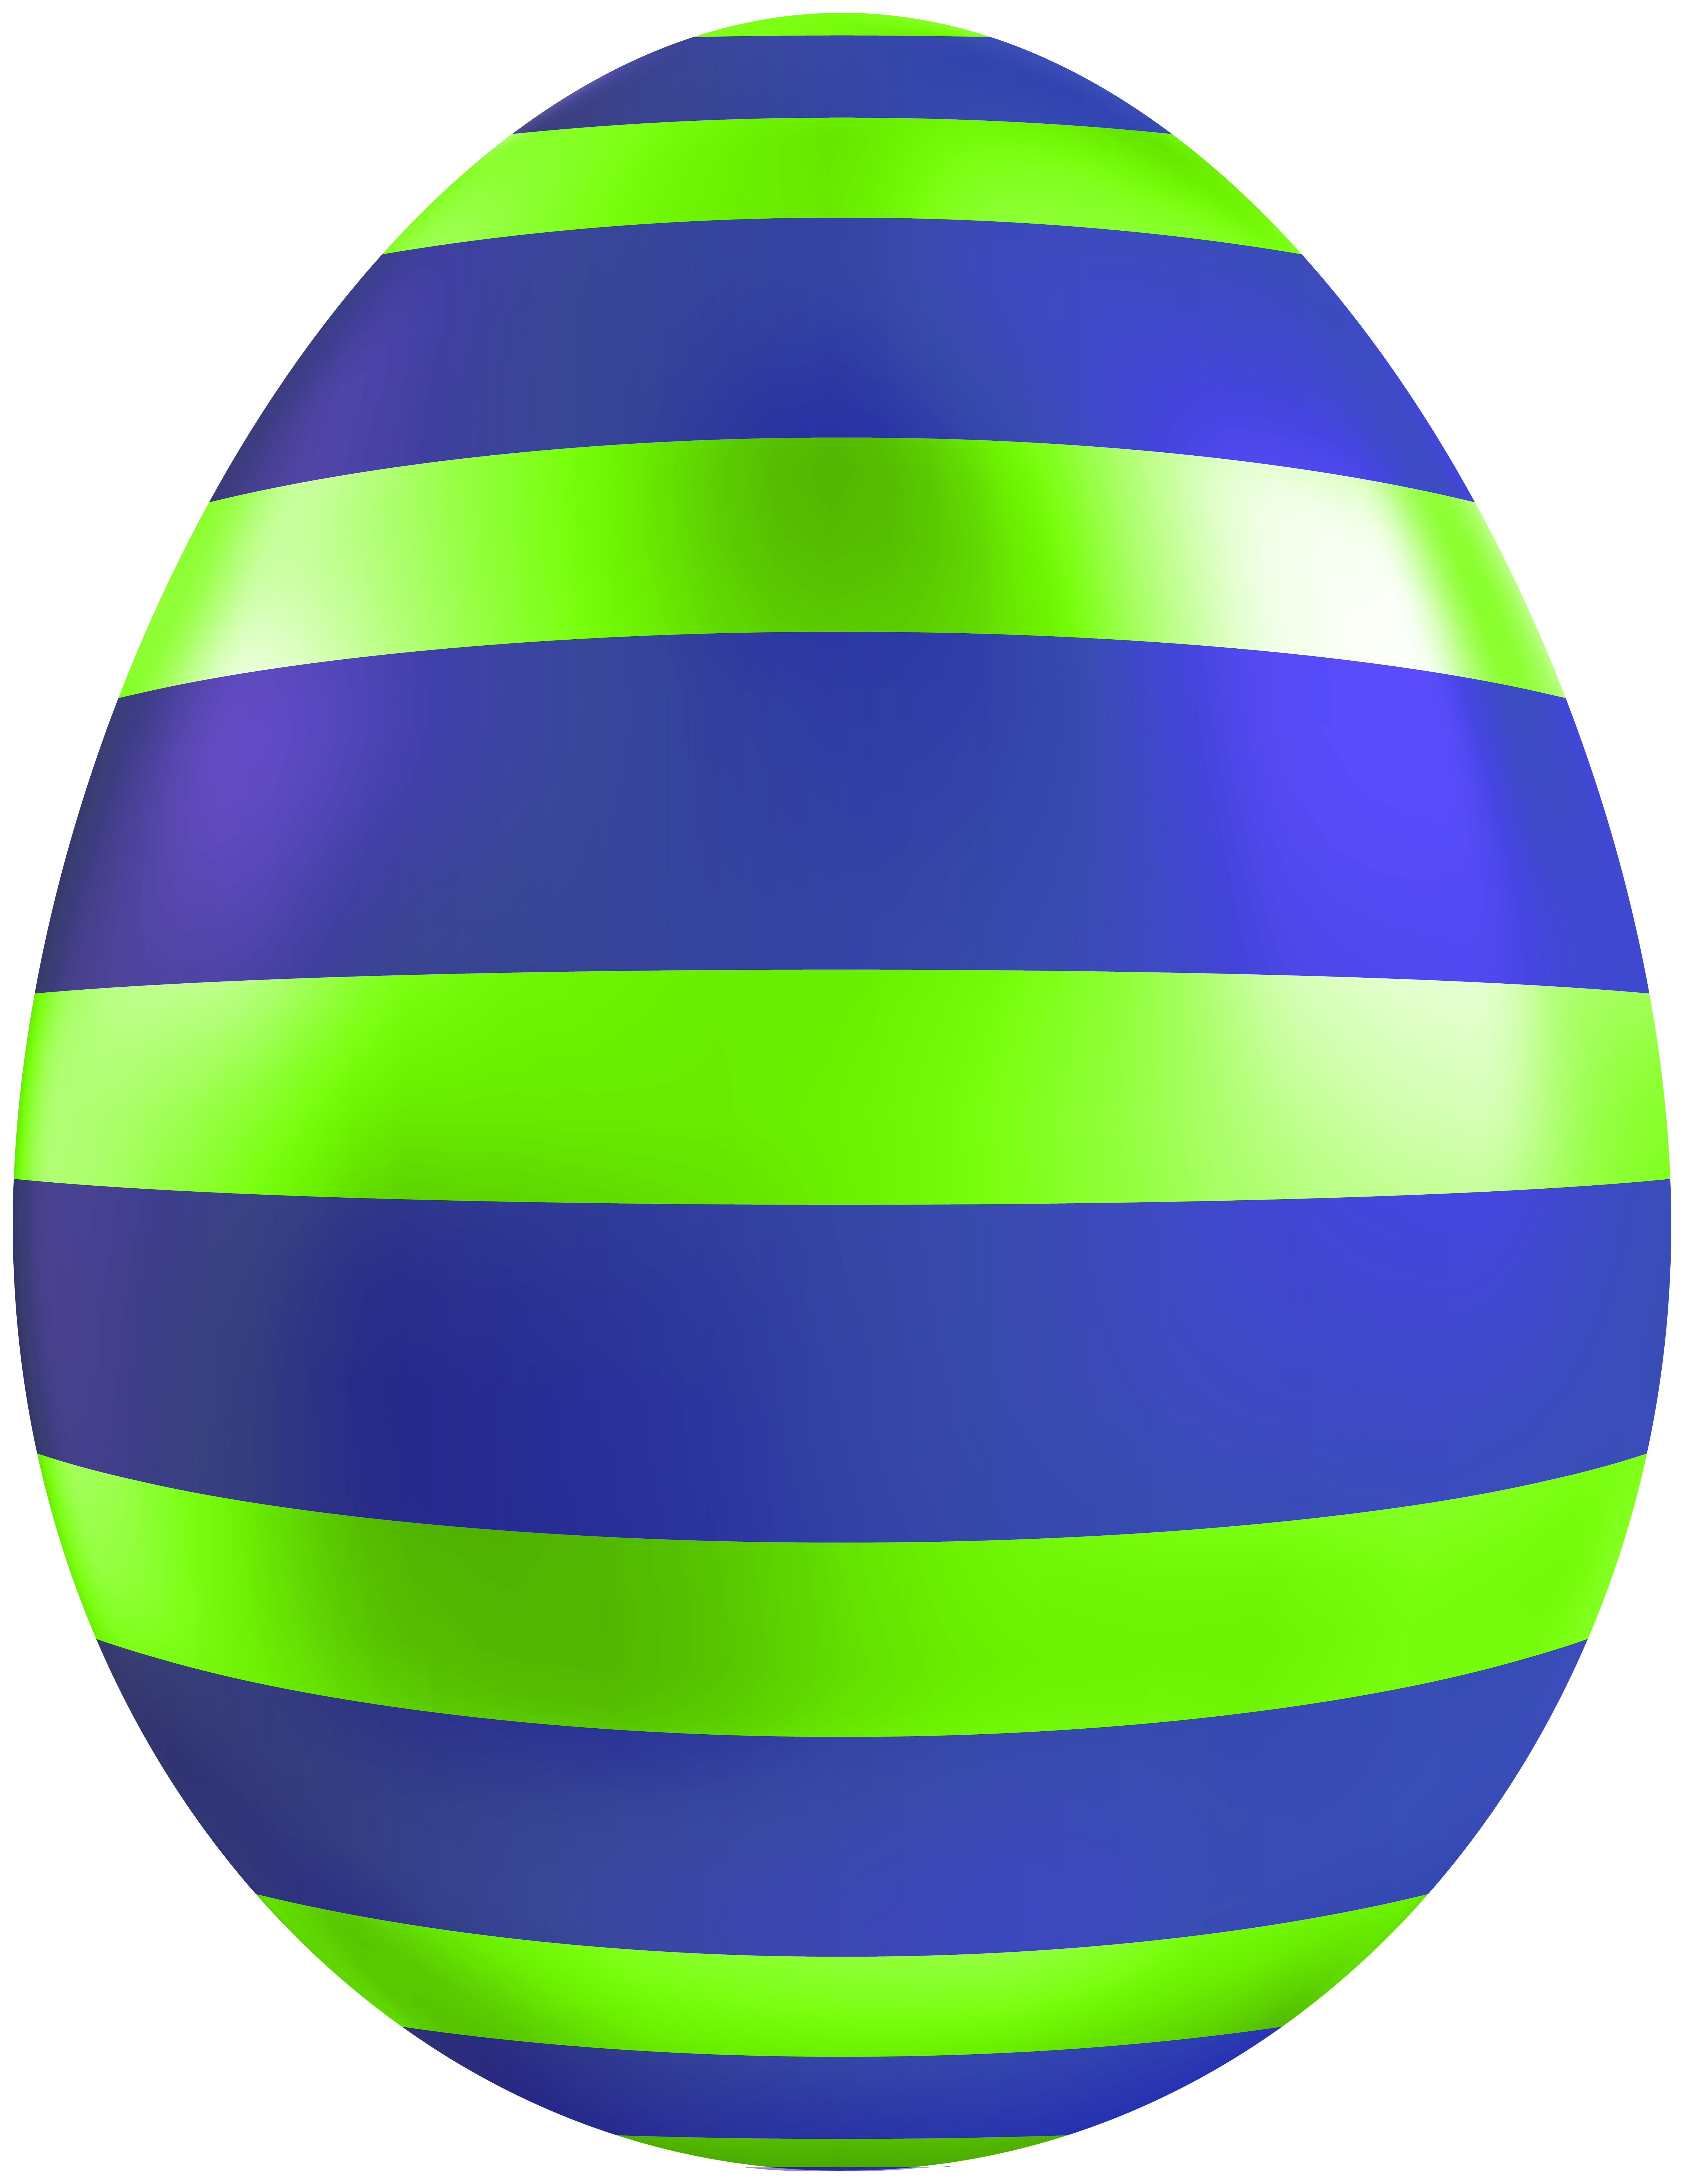 blue easter egg